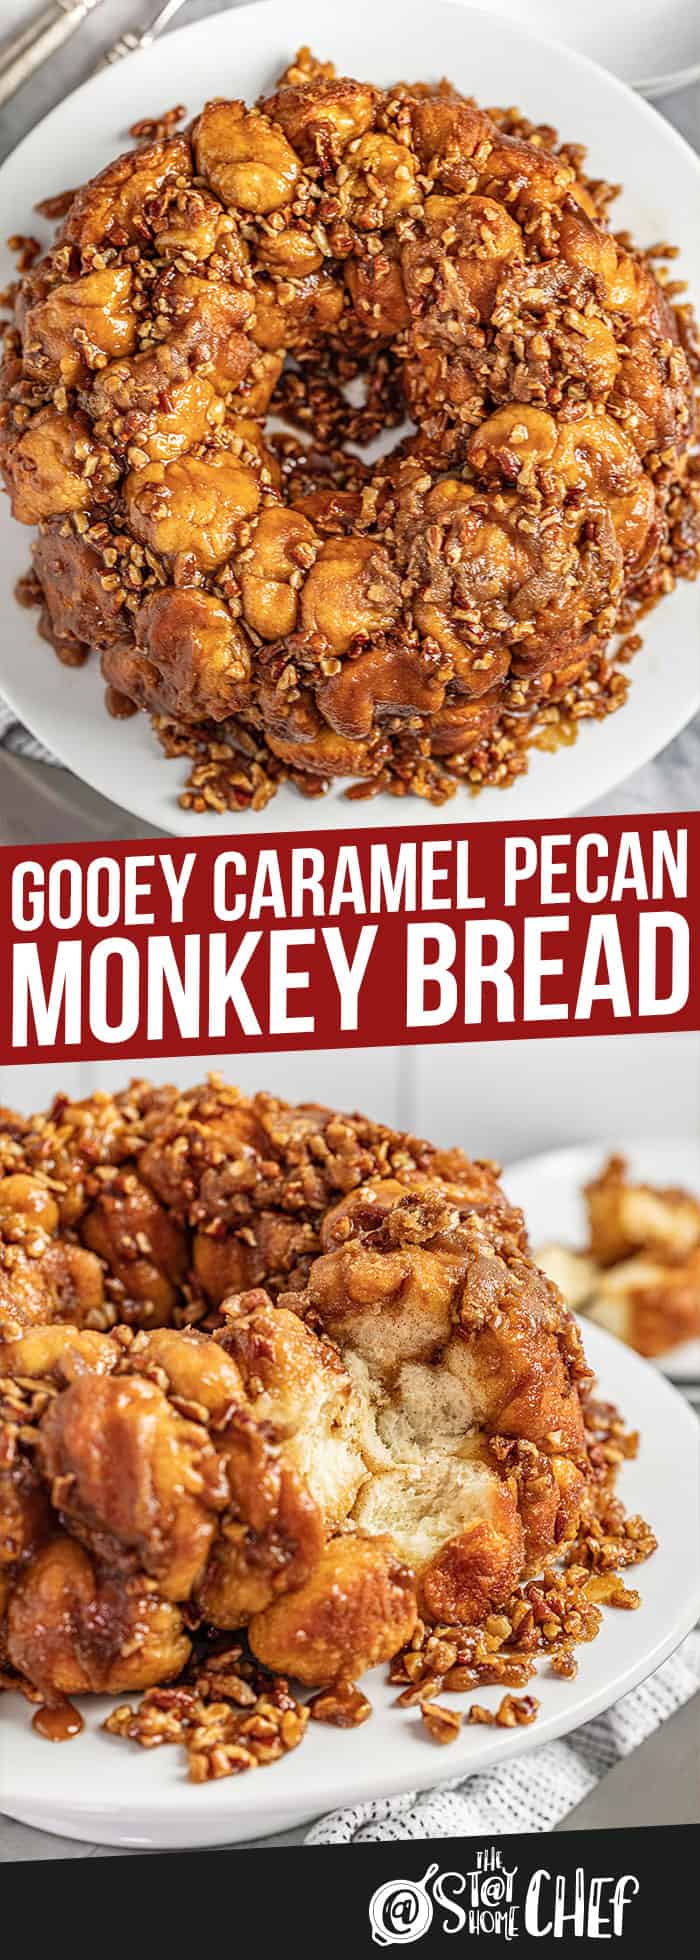 Gooey Caramel Pecan Monkey Bread (From Scratch)